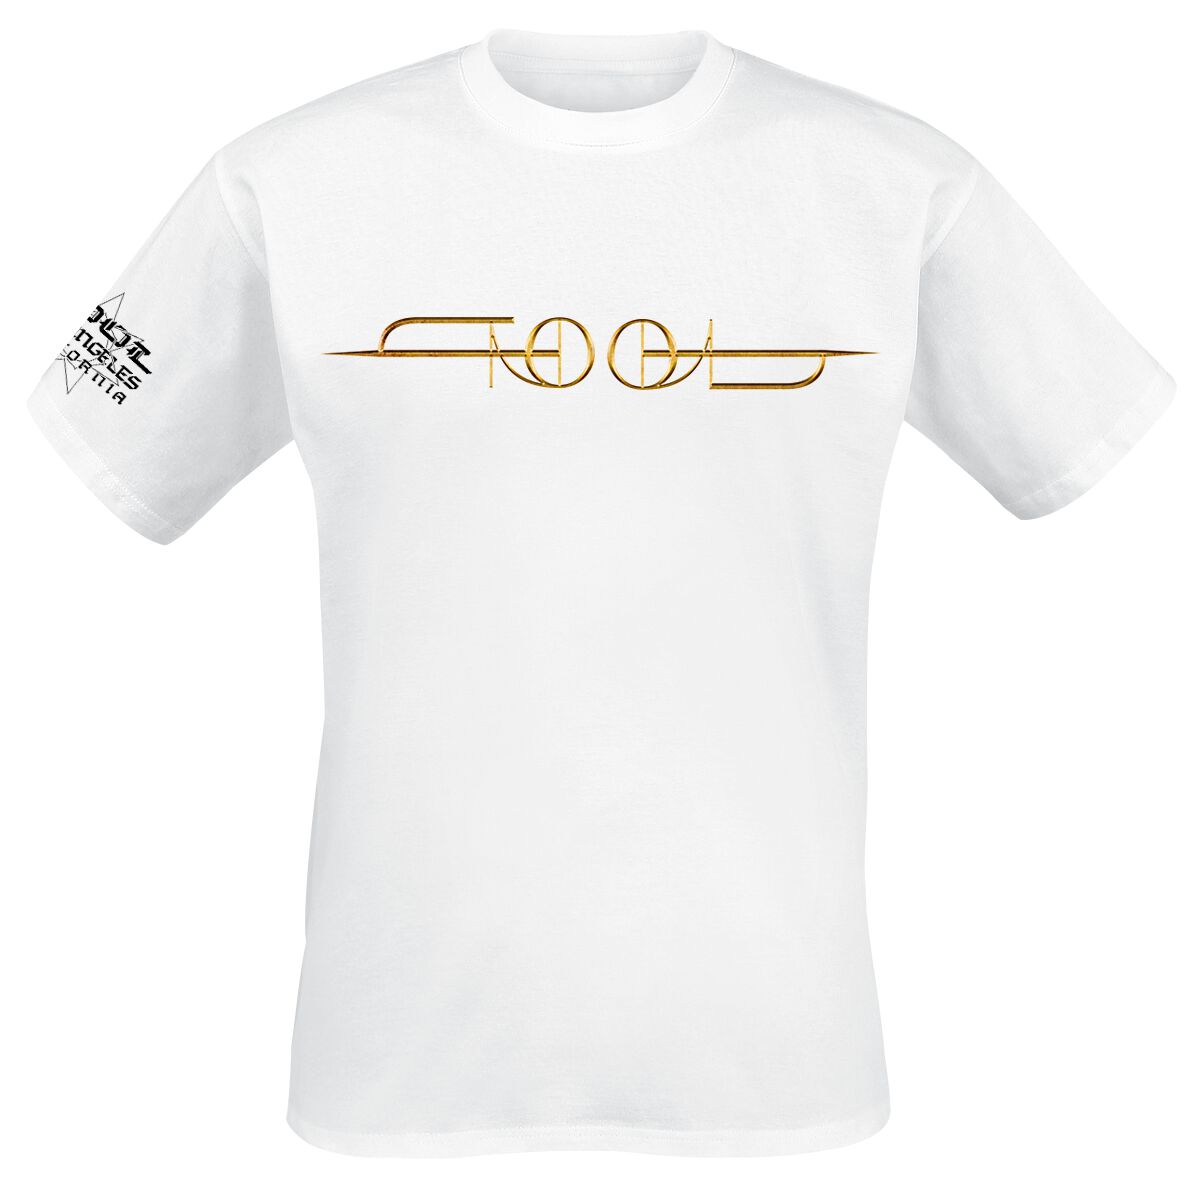 Tool T-Shirt - Gold ISO - L bis XXL - für Männer - Größe XL - weiß  - Lizenziertes Merchandise!